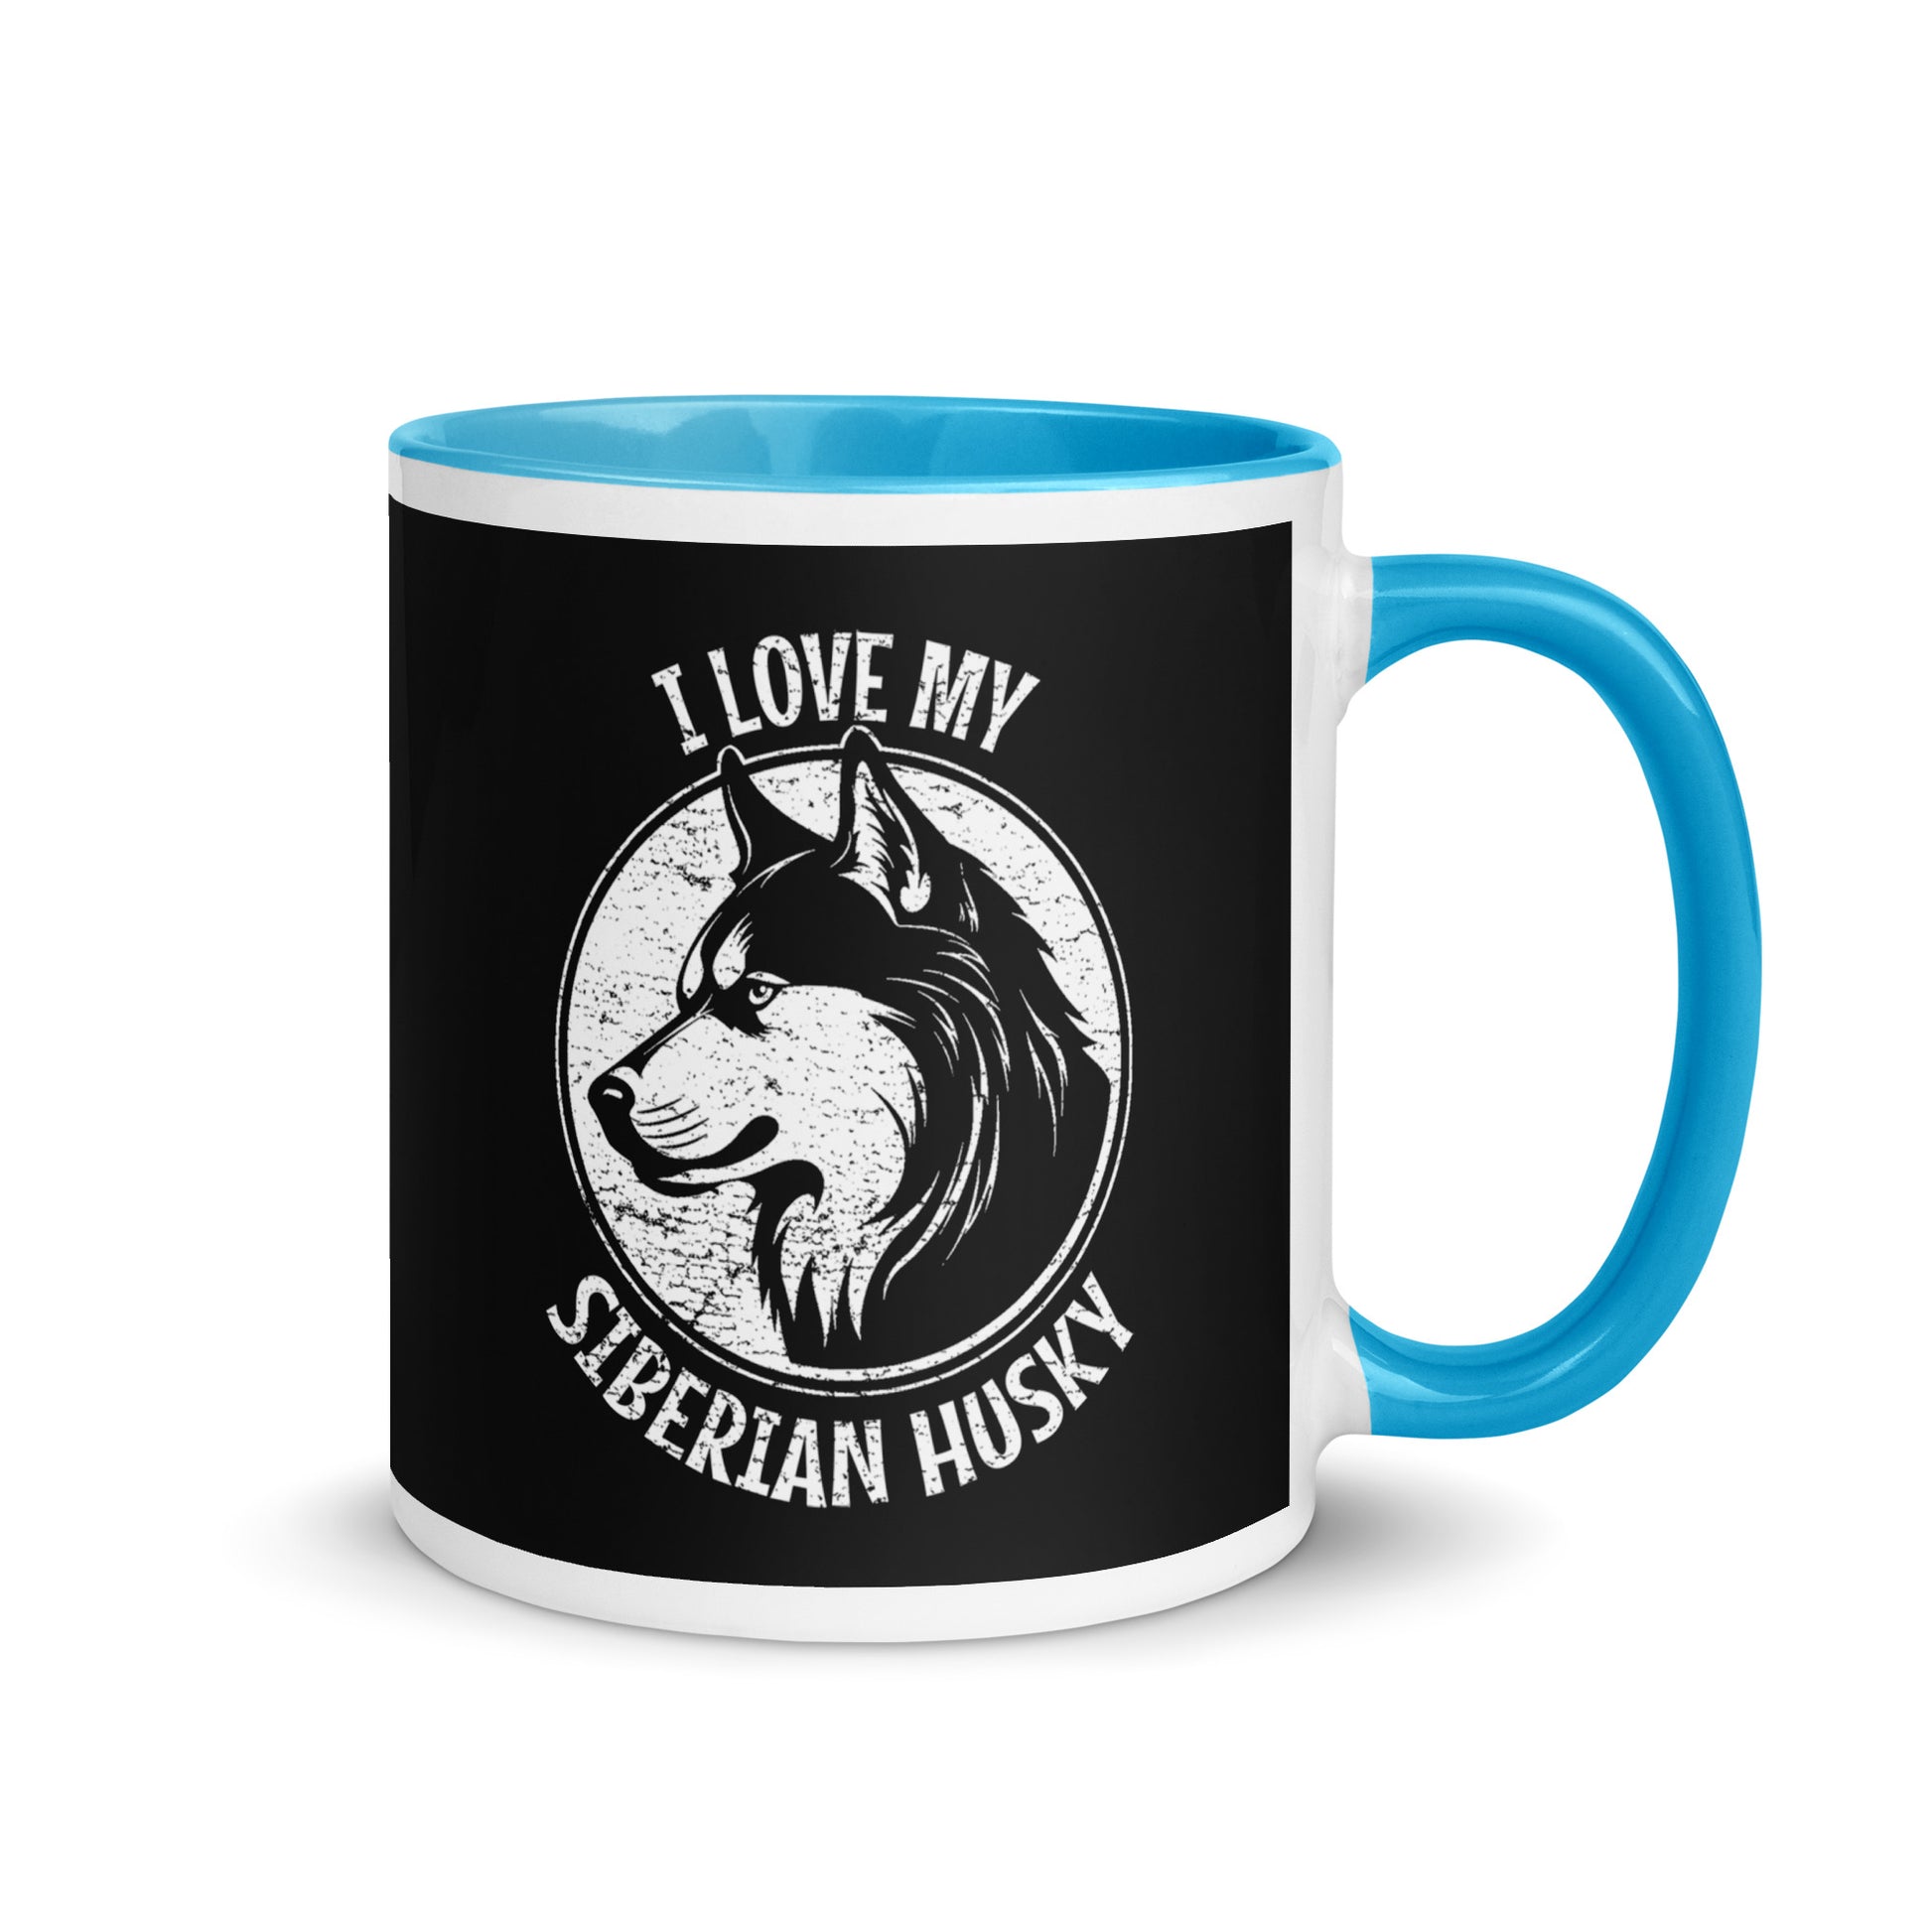 Siberian Husky Mug, Siberian Husky gift, gift for dog mom, custom dog gift, dog owner gift, pet memorial gift